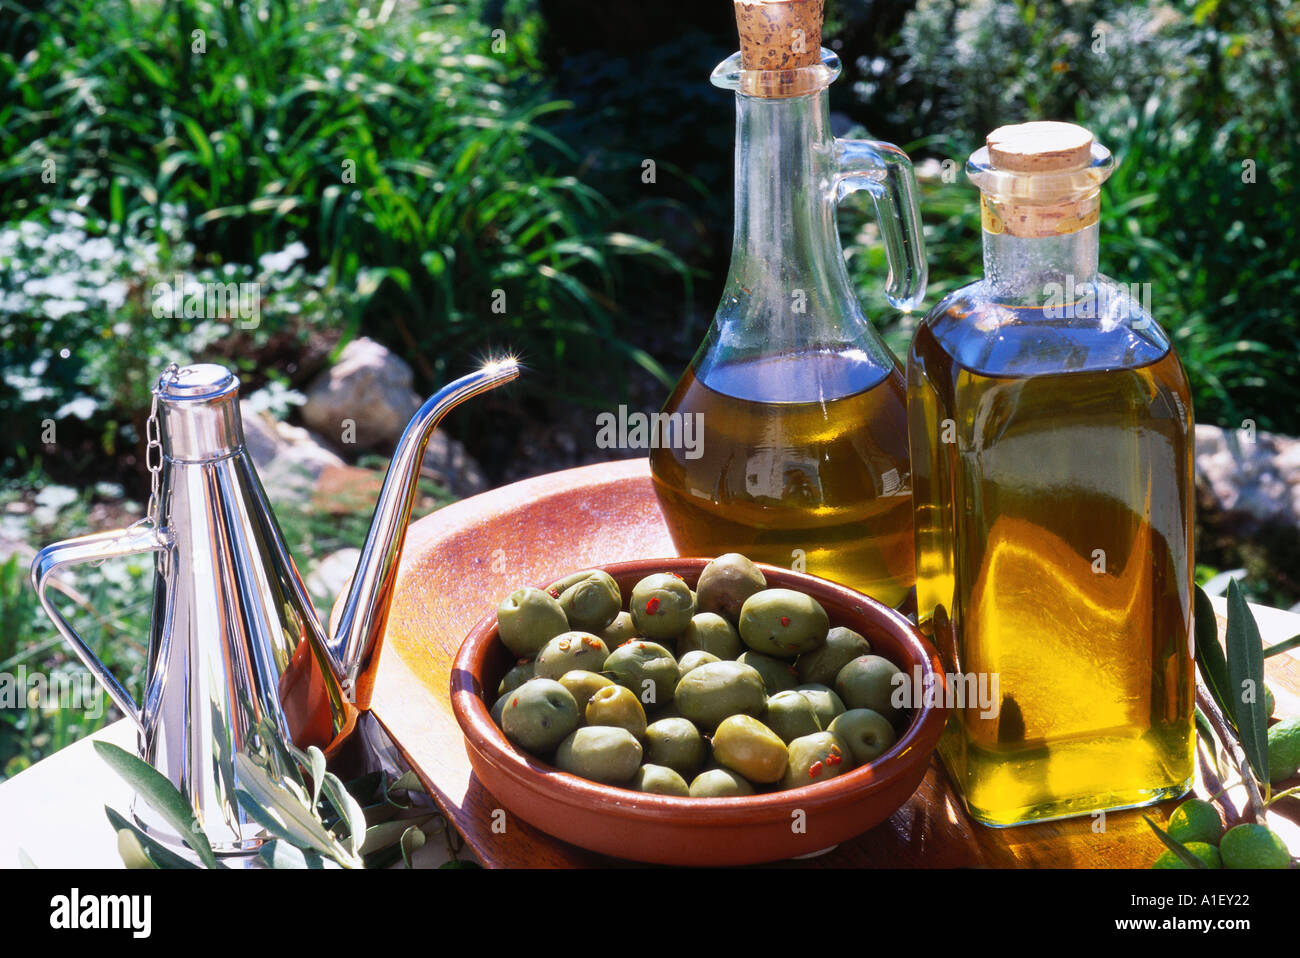 Оливковое масло является